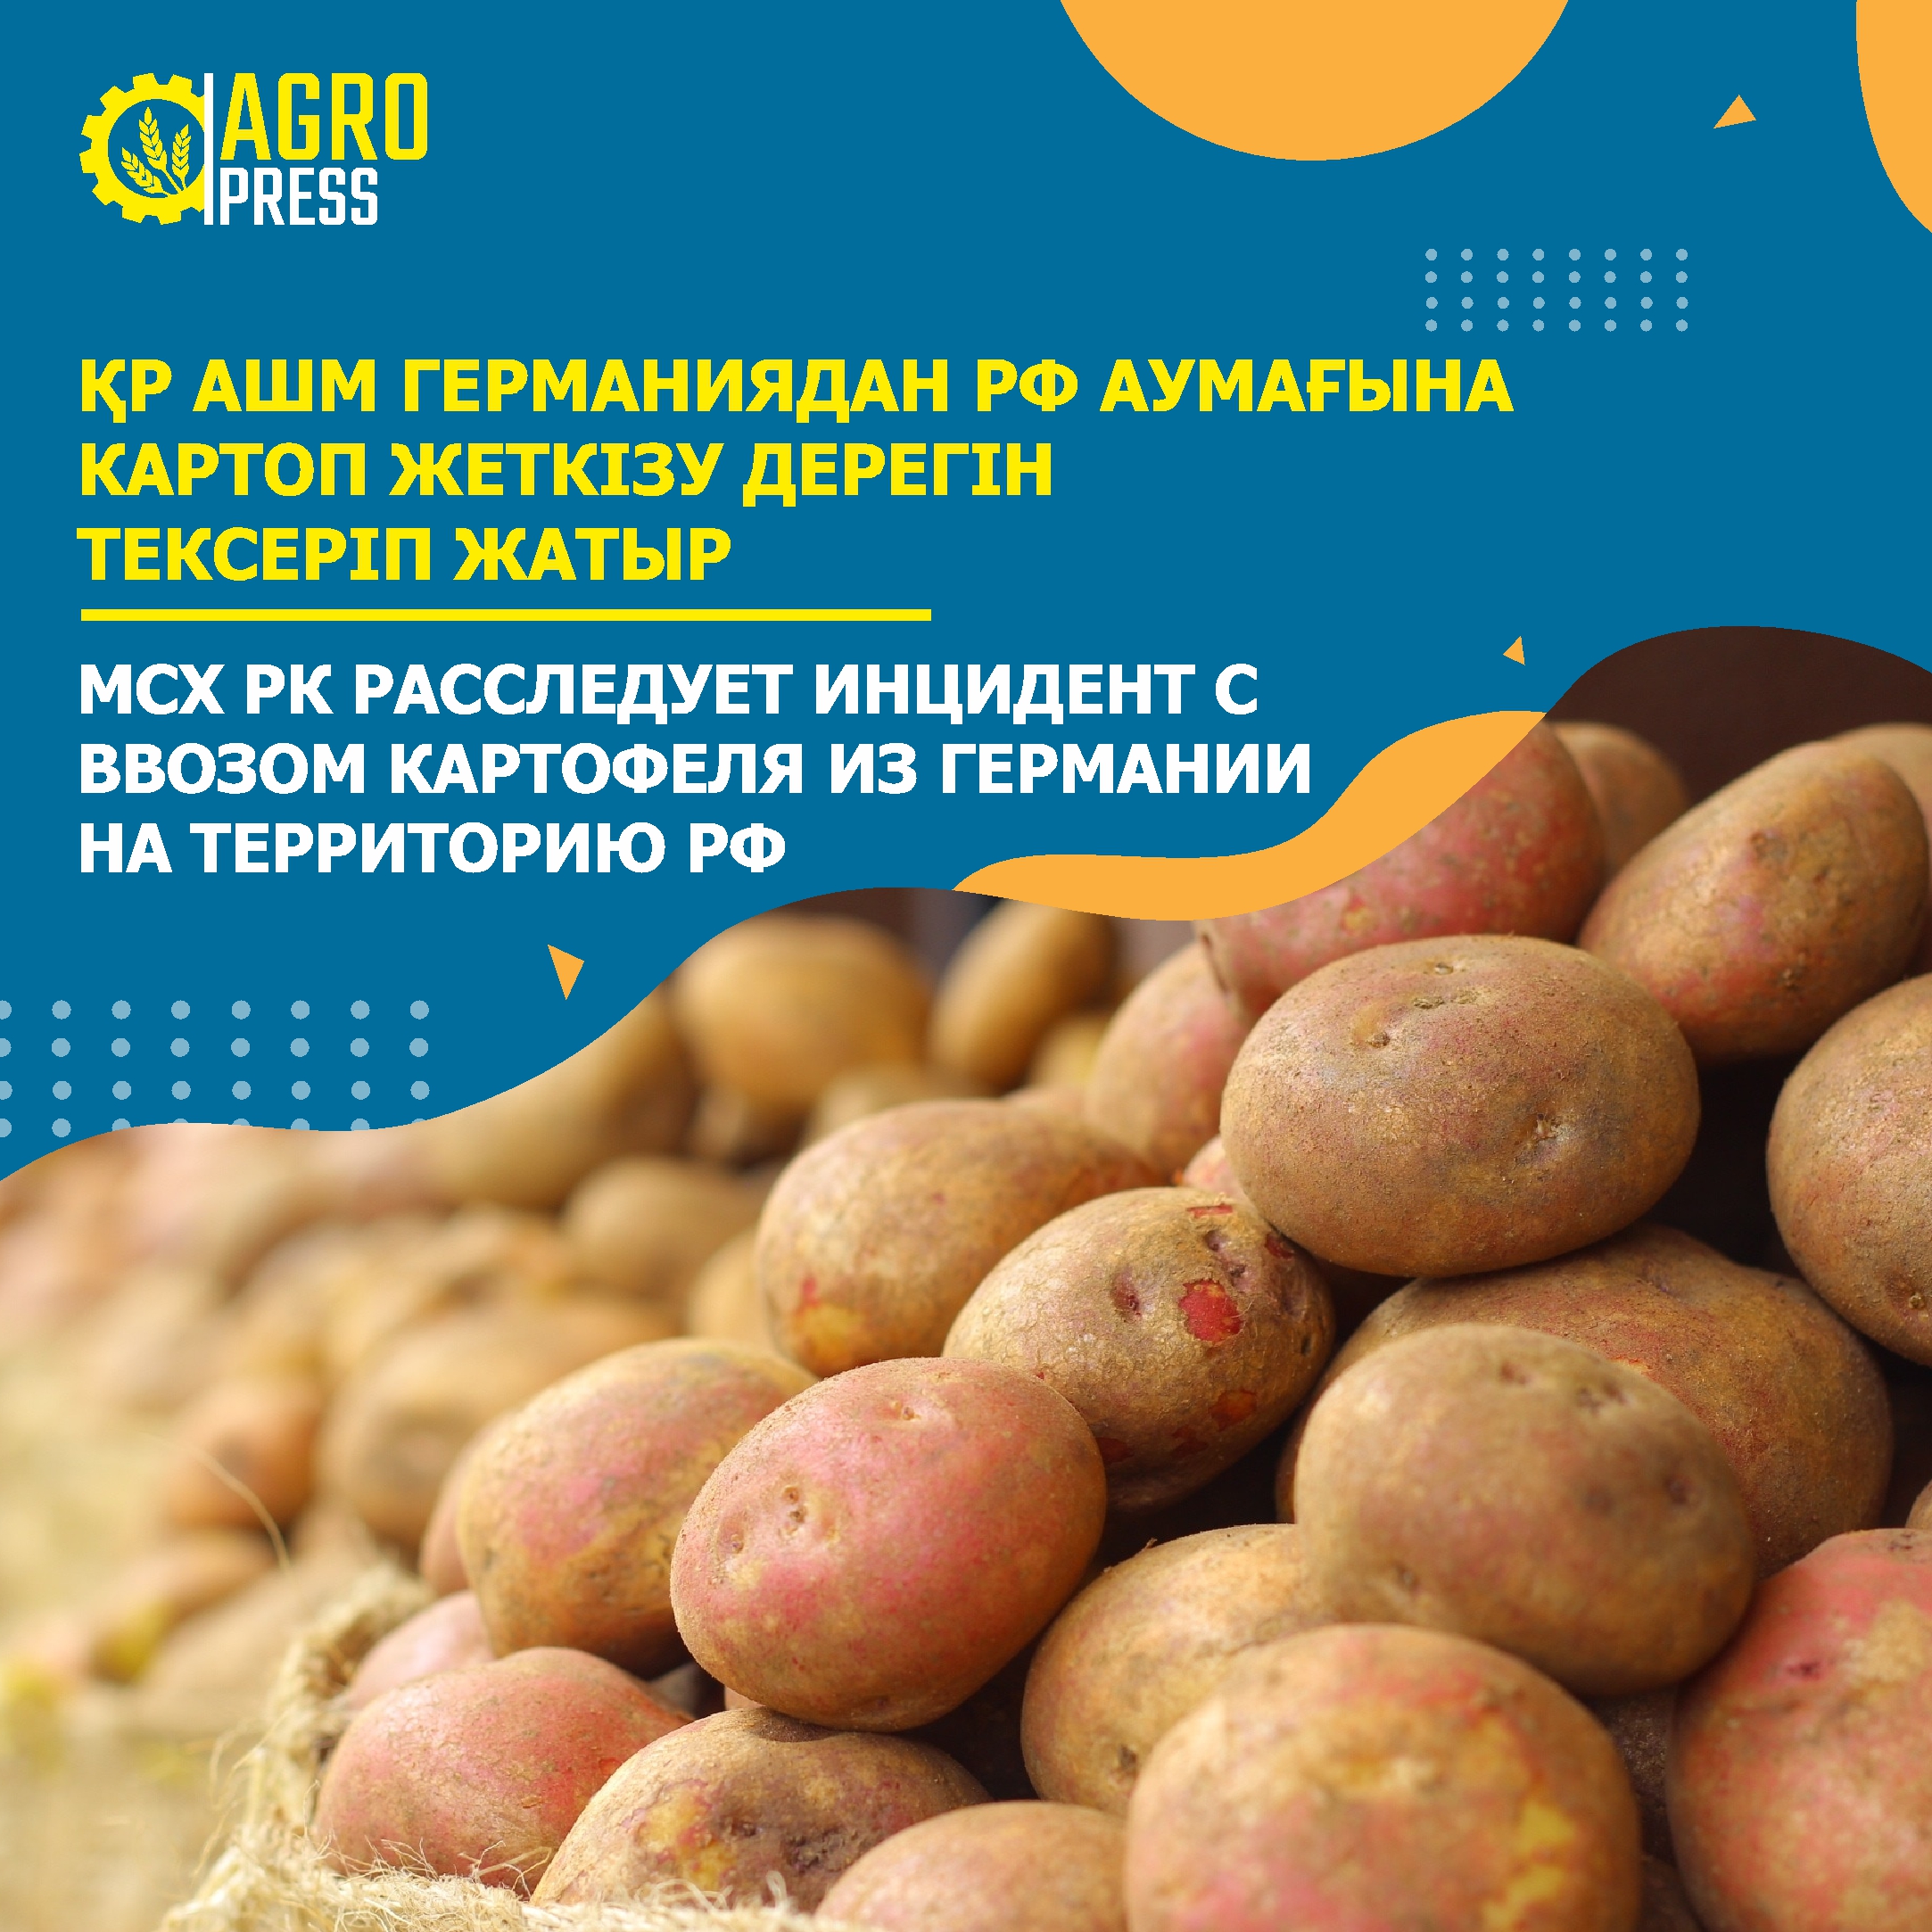 МСХ РК расследует инцидент с ввозом картофеля из Германии на территорию РФ